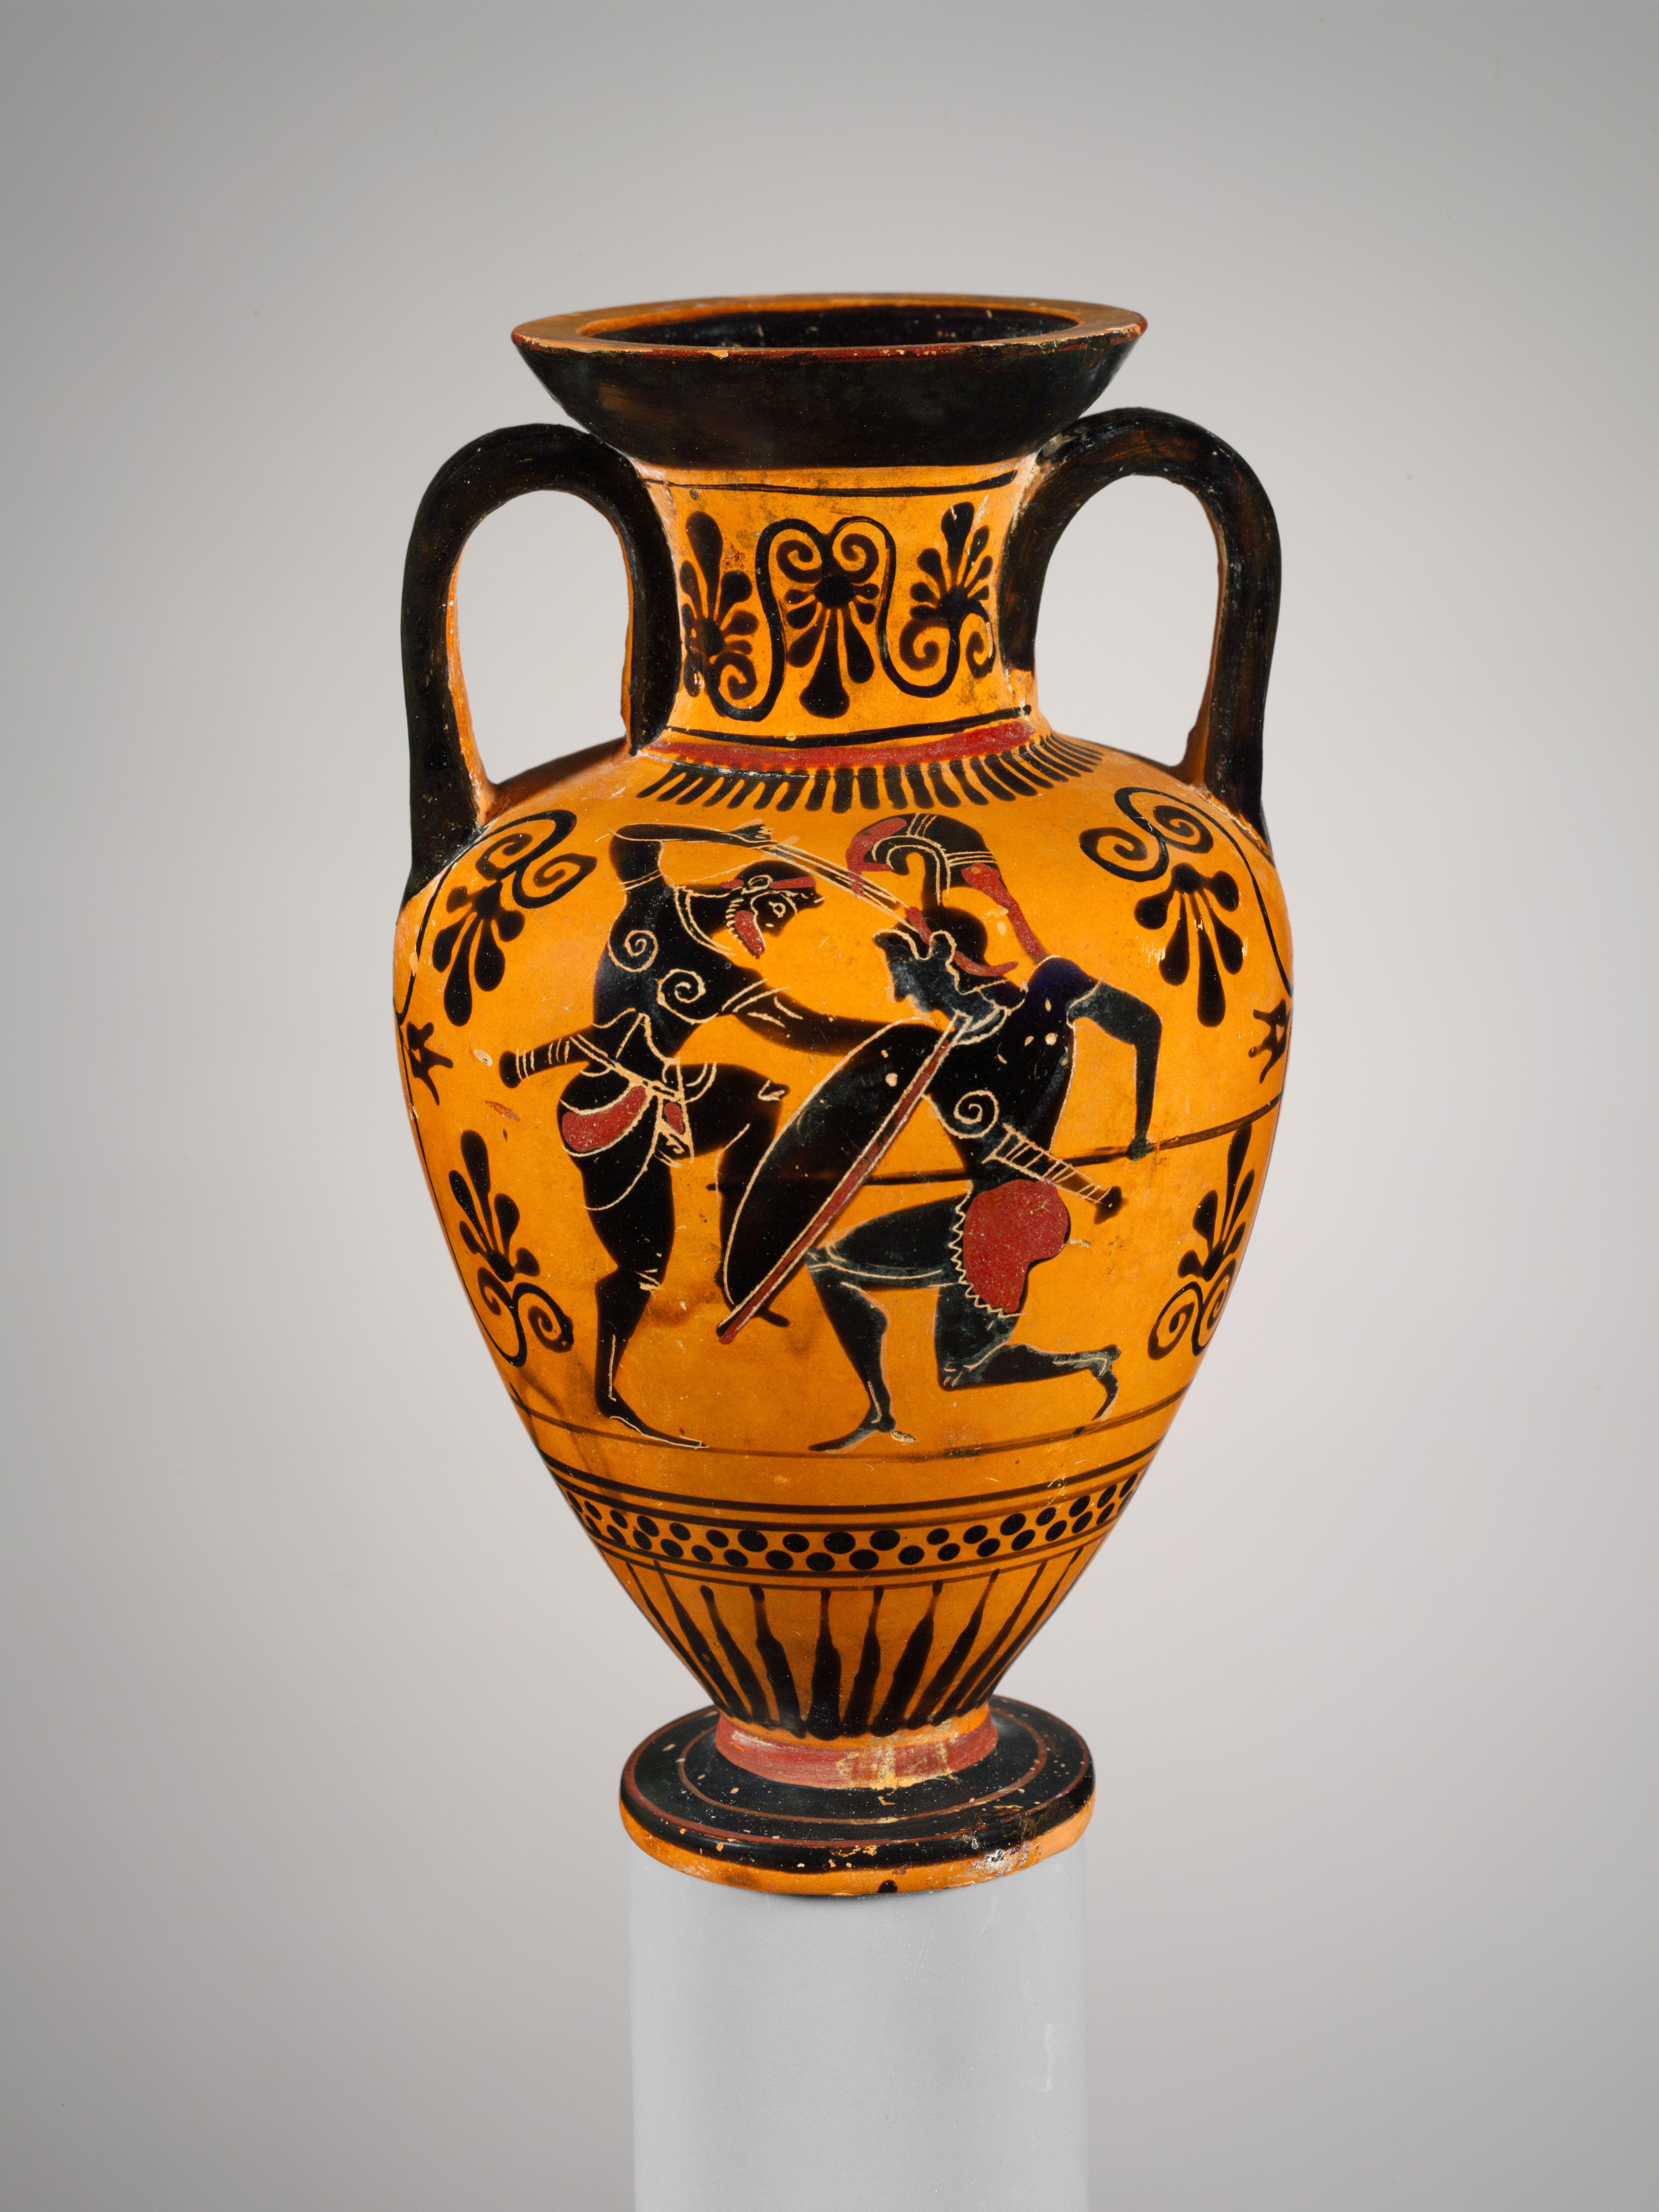 Greek Amphora Vase 22cm,Theseus and the minotaur,Black Figure Pottery